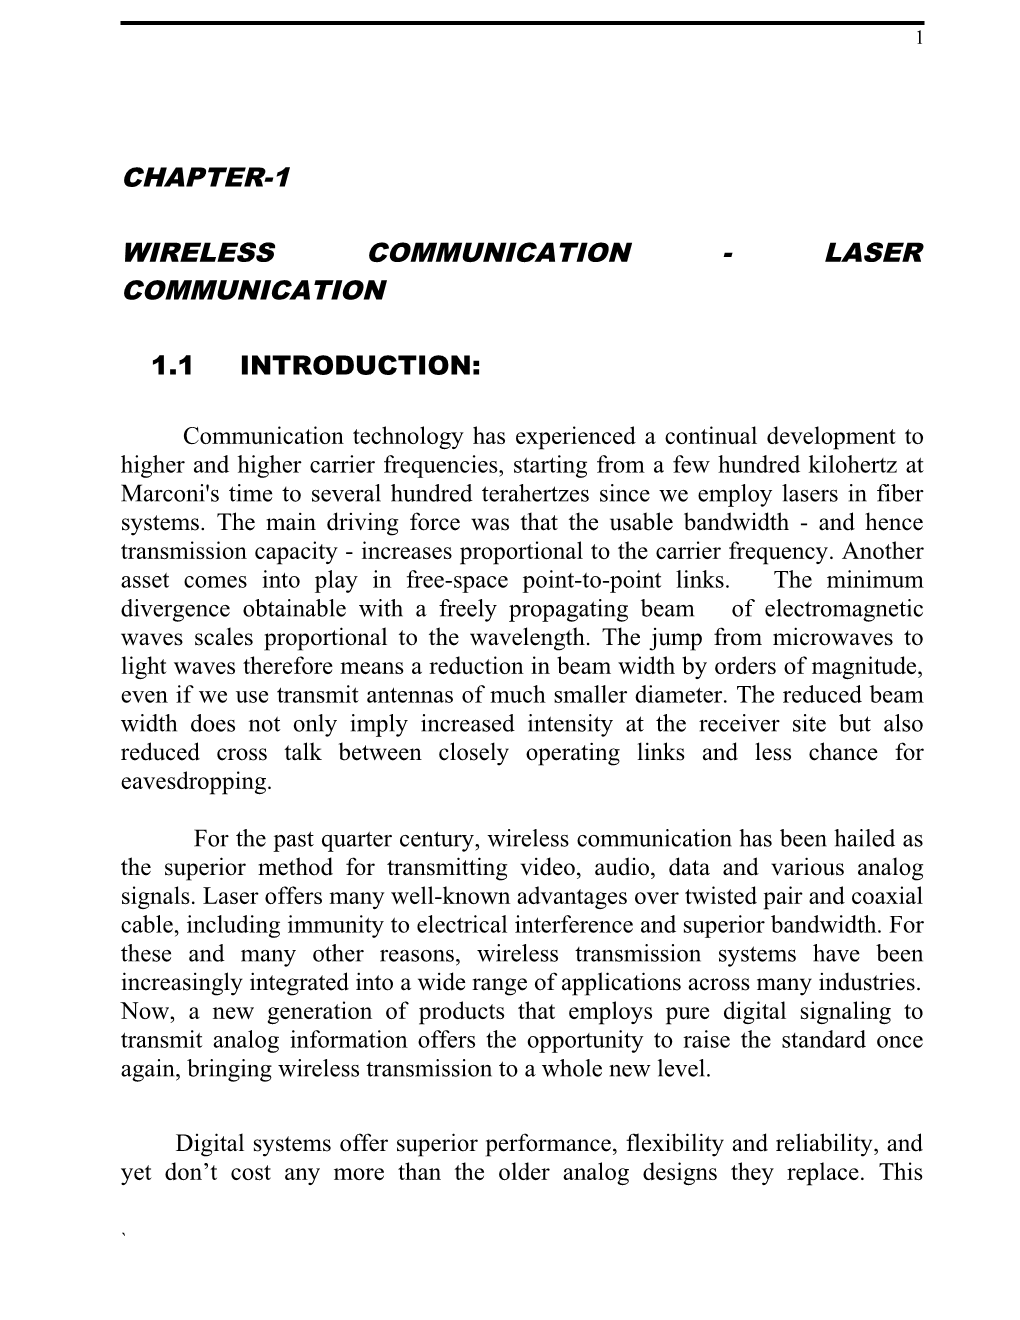 Wireless Communication - Laser Communication